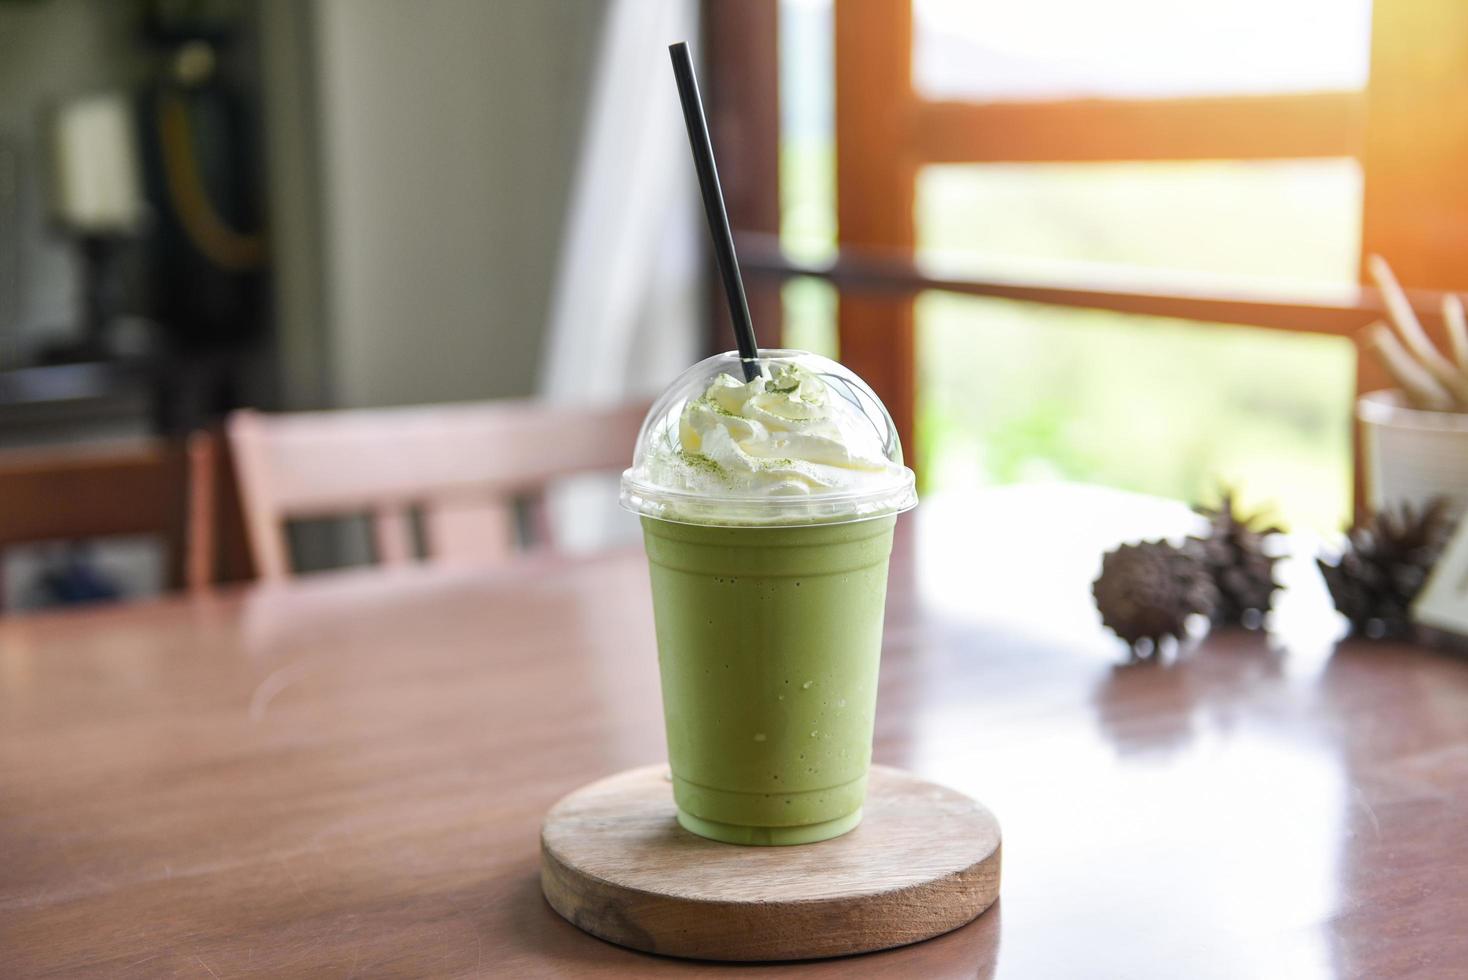 groene thee smoothie - matcha groene thee met melk op plastic glas geserveerd in een café foto